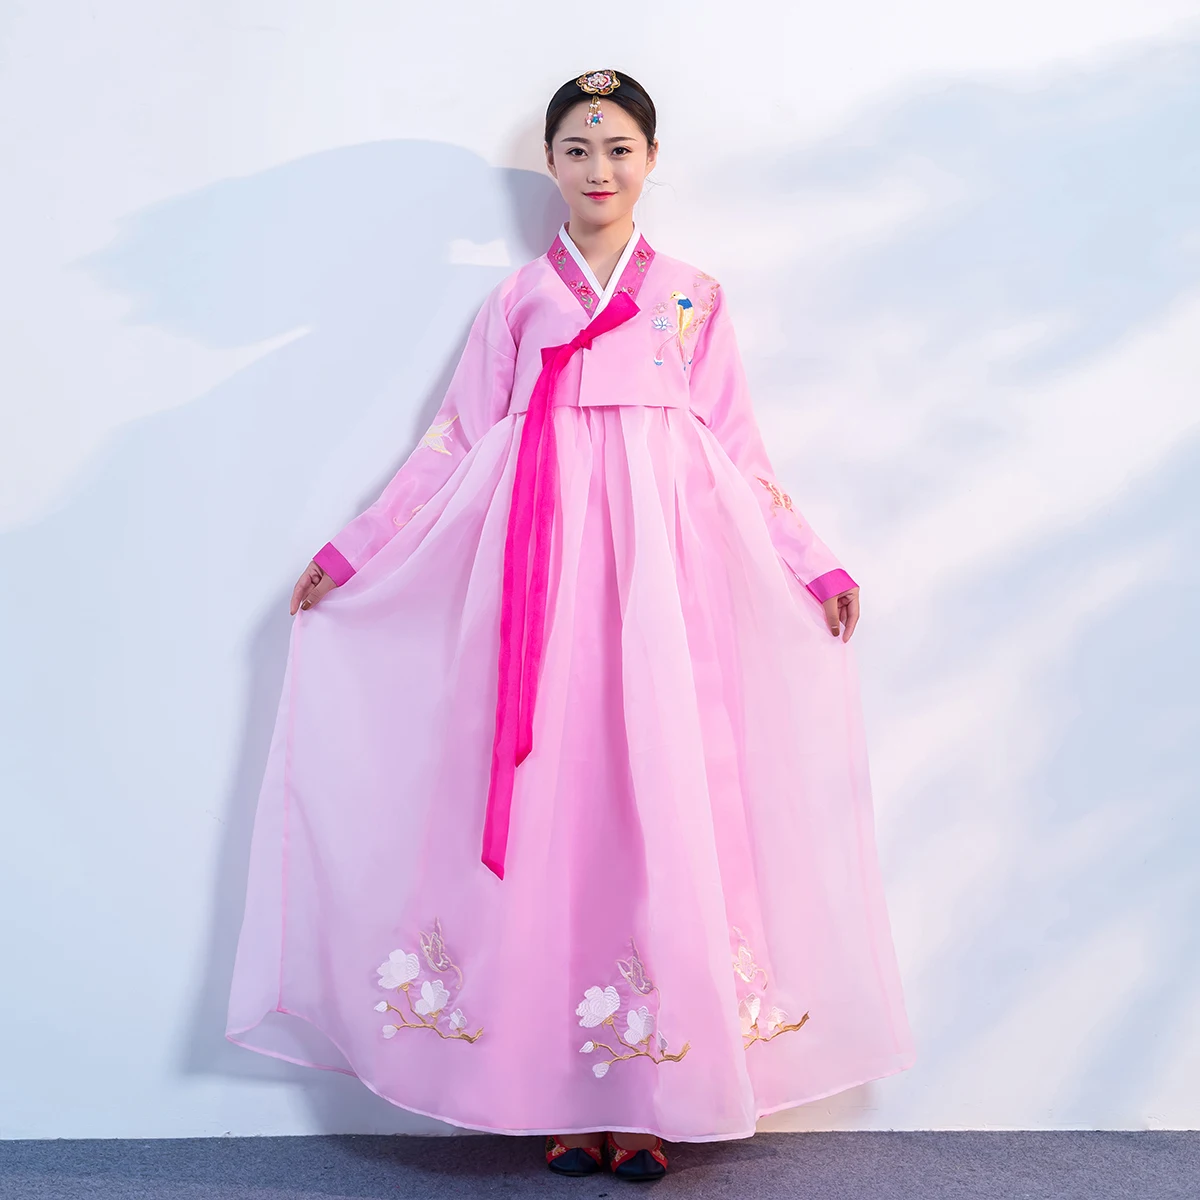 Корейский ханбок традиционный костюм Дворец бракосочетаний сцене для женщин Винтаж Южной Кореи меньшинство танцевальные костюмы древних костюм